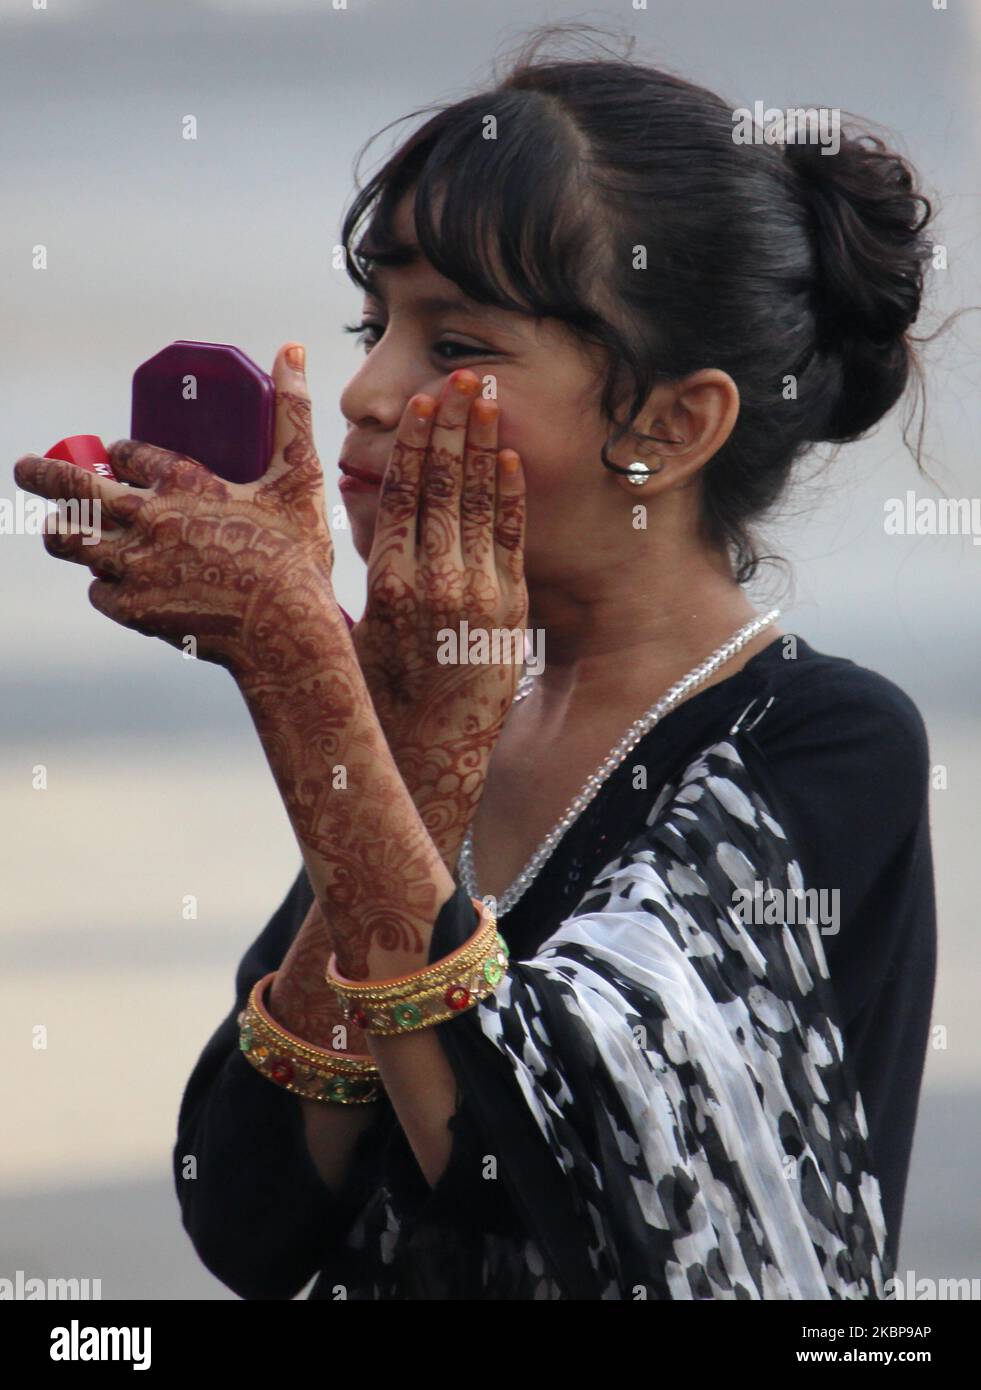 Una niña musulmana aplica maquillaje junto a una carretera durante Eid al-Fitr en Mumbai, India, el 25 de mayo de 2020. Eid marca el del mes santo de que